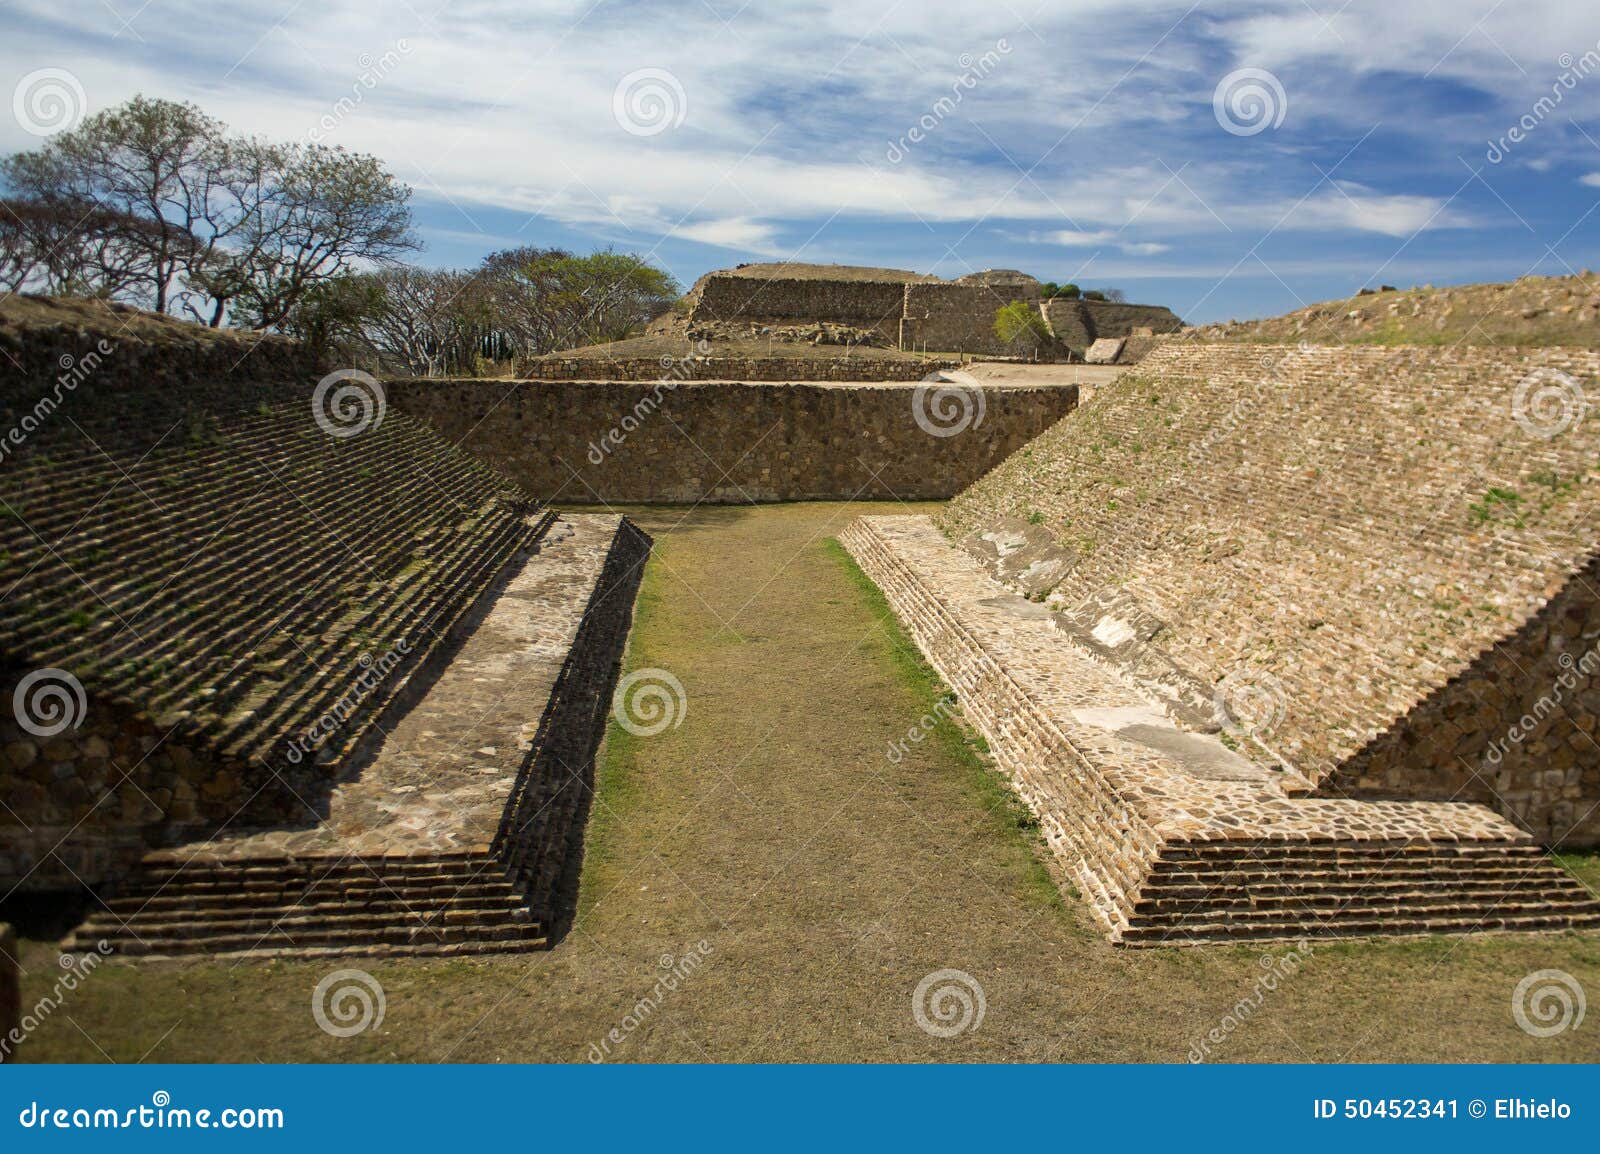 monte alban oaxaca mexico ancient ball game stadium huego de pelota